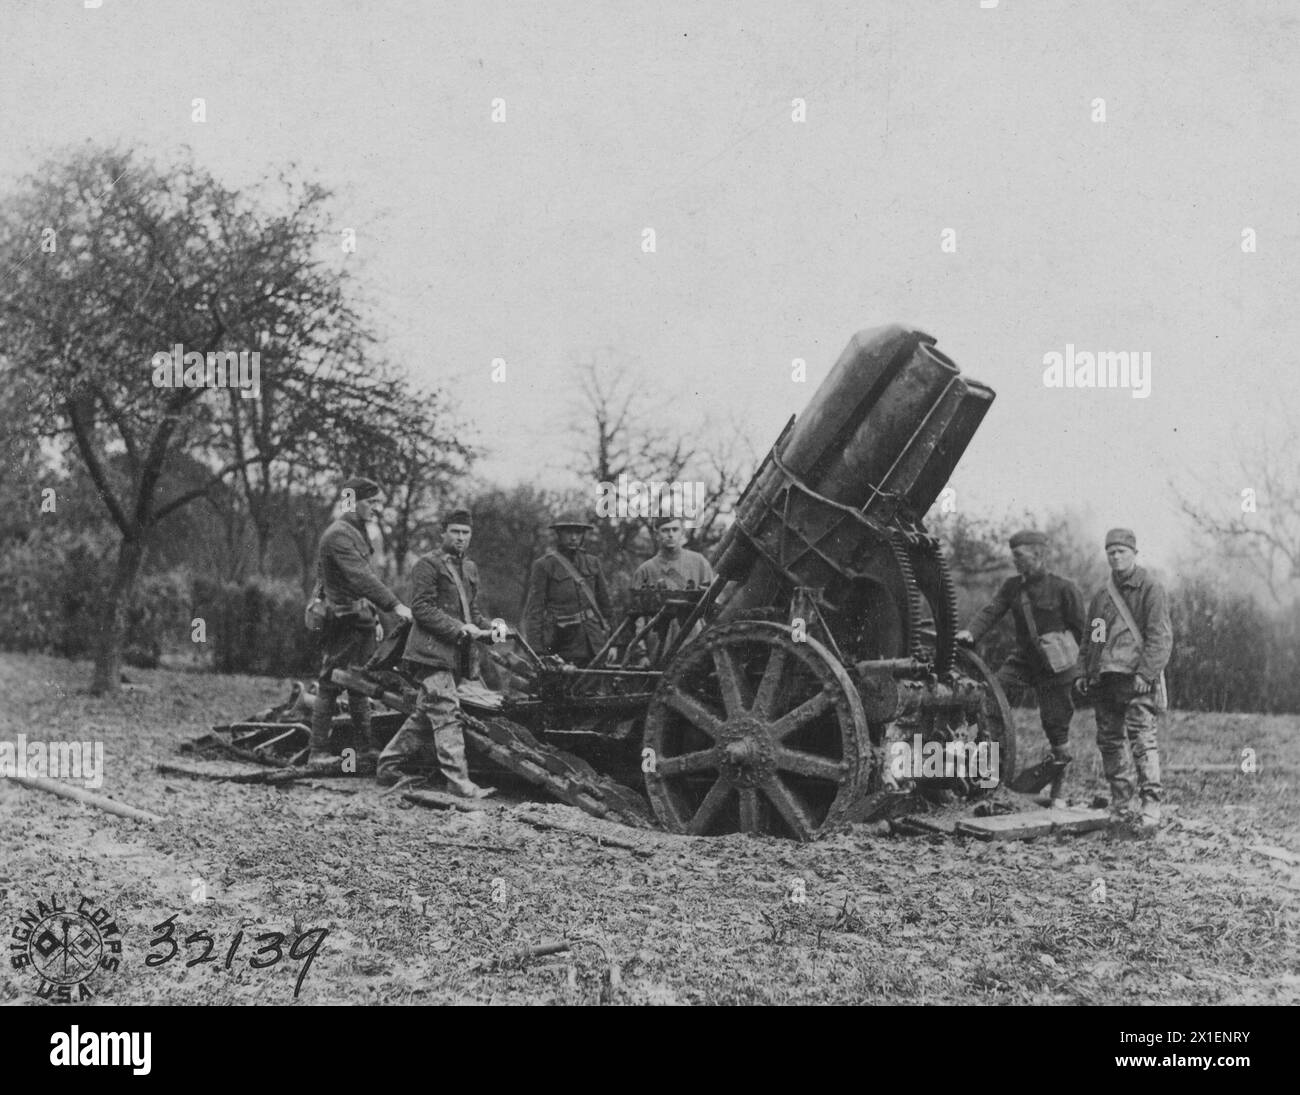 Didascalia originale: Un obice da 210 mm preso in territorio catturato dalle truppe della 80a divisione a Vaux in Francia ca. 1918 Foto Stock